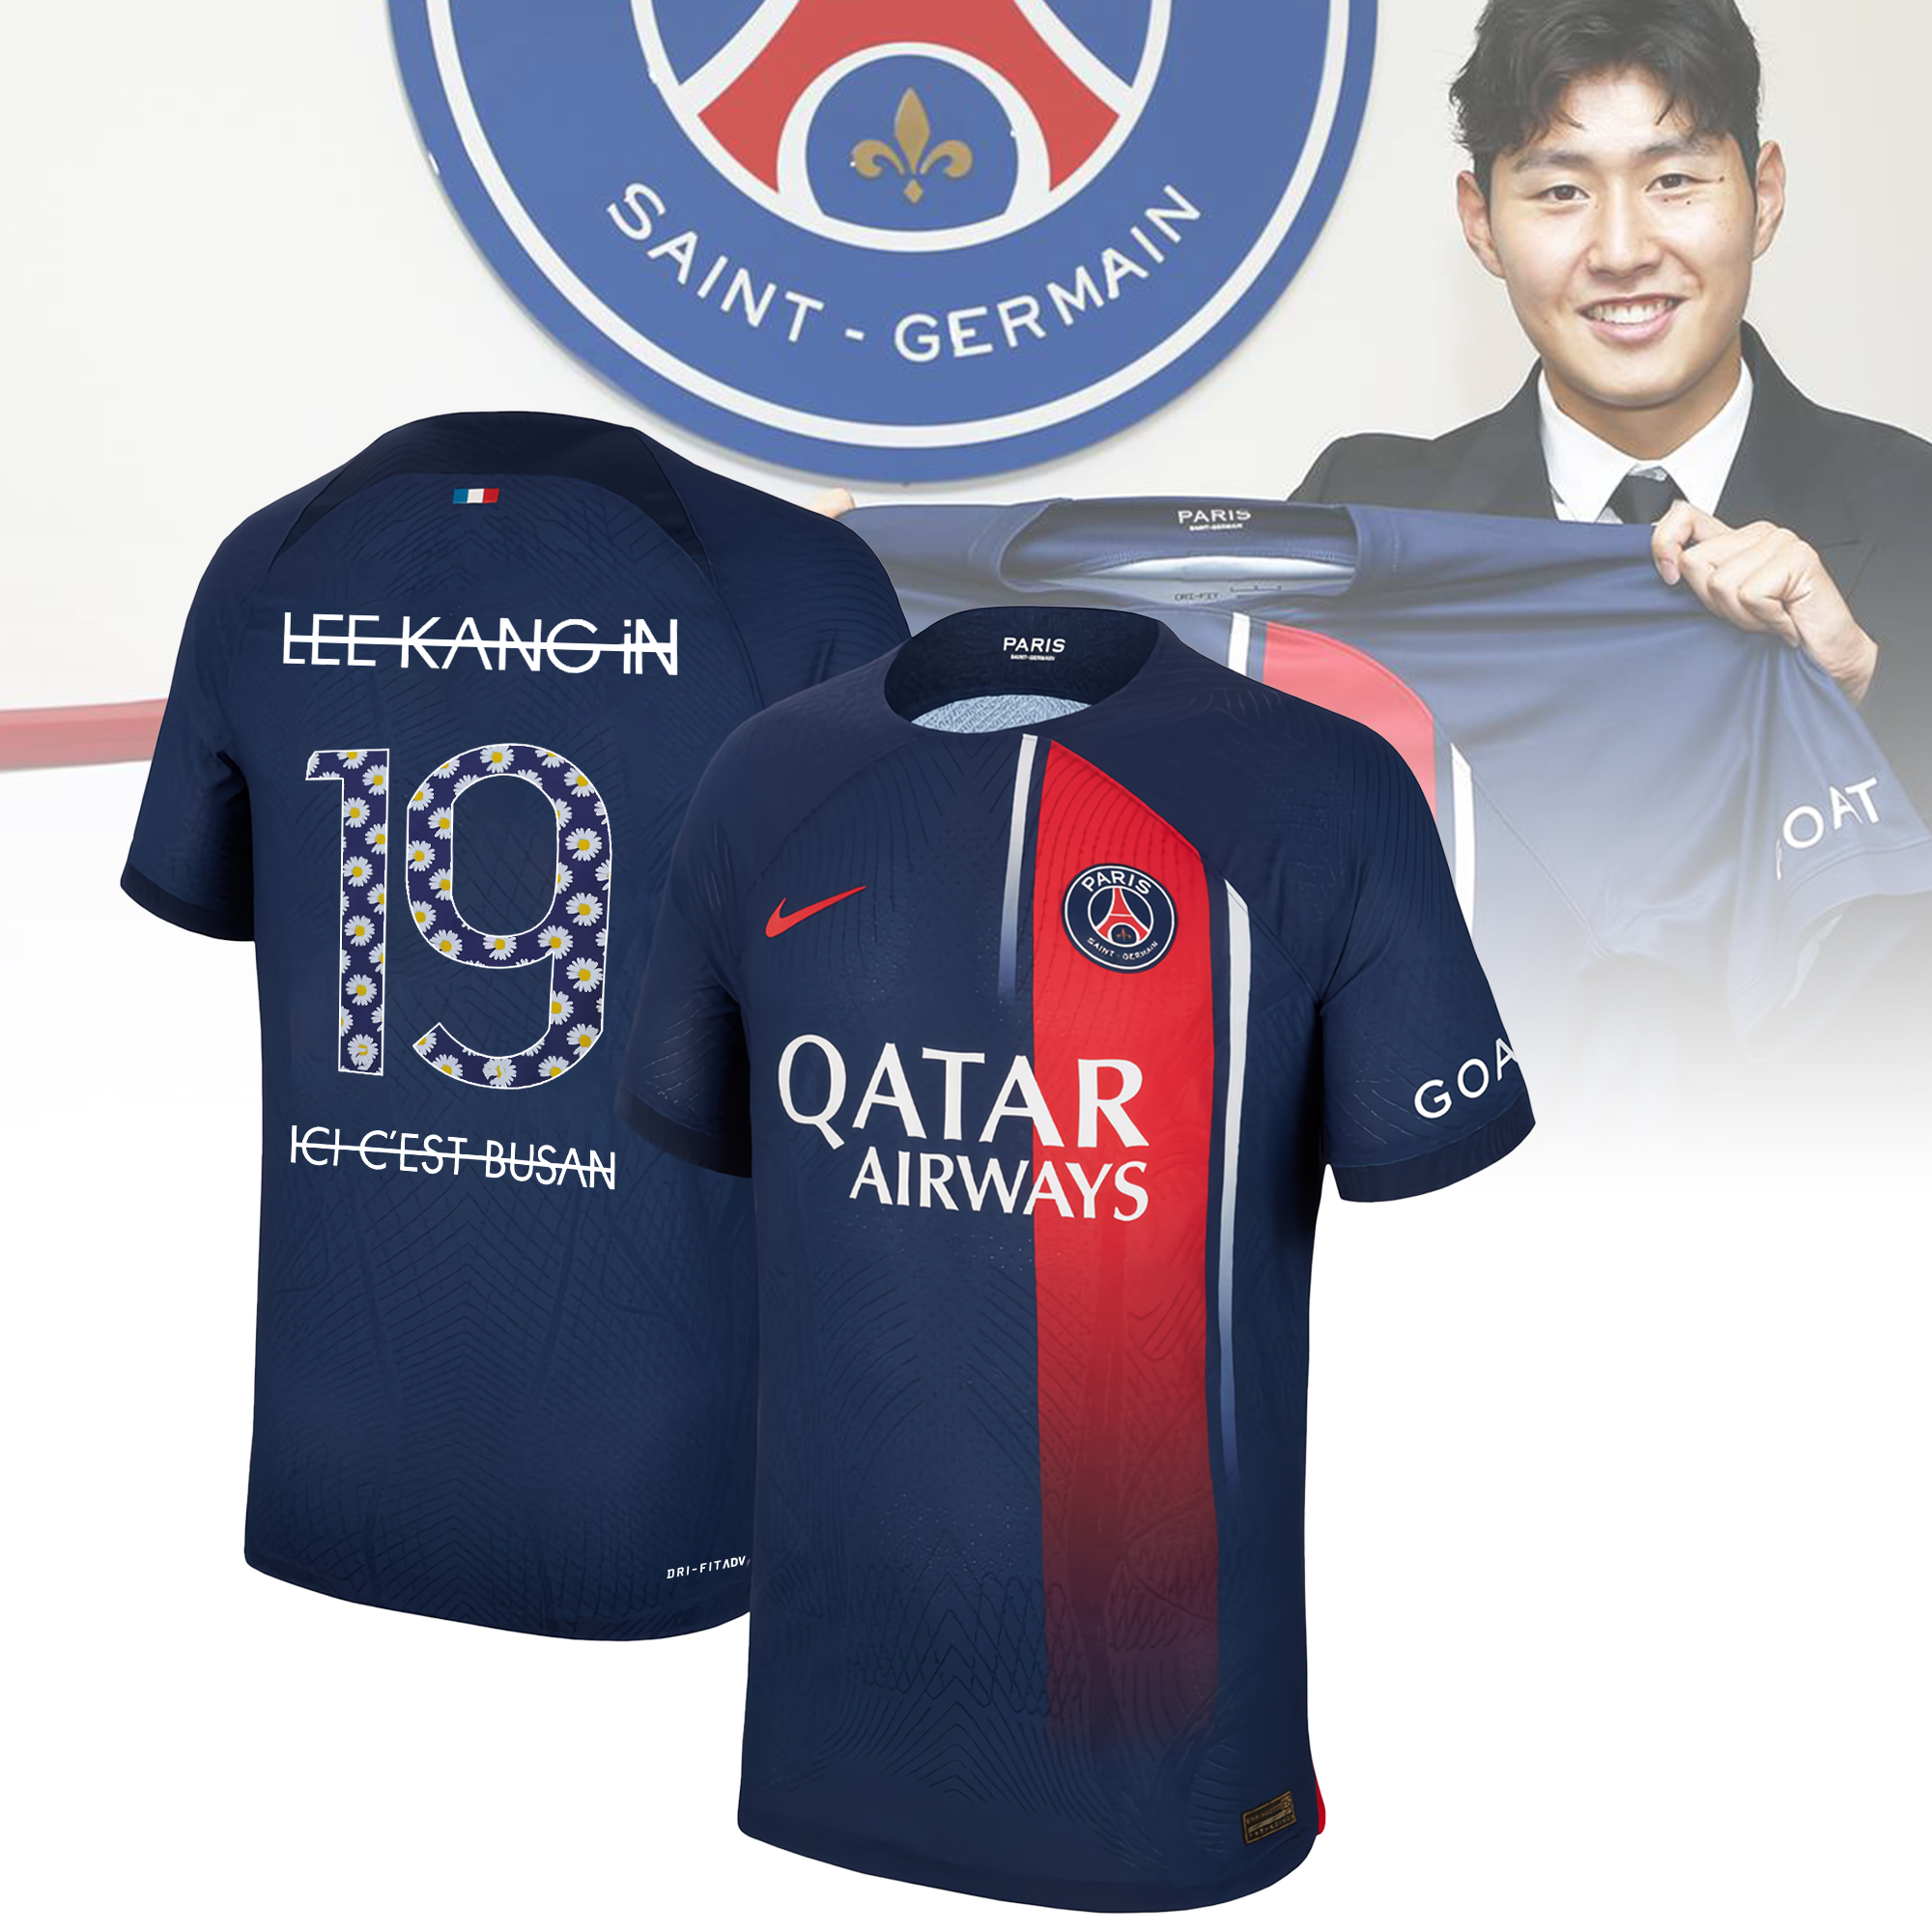 PEACEMINUSONE x Paris Saint-Germain Football Kits